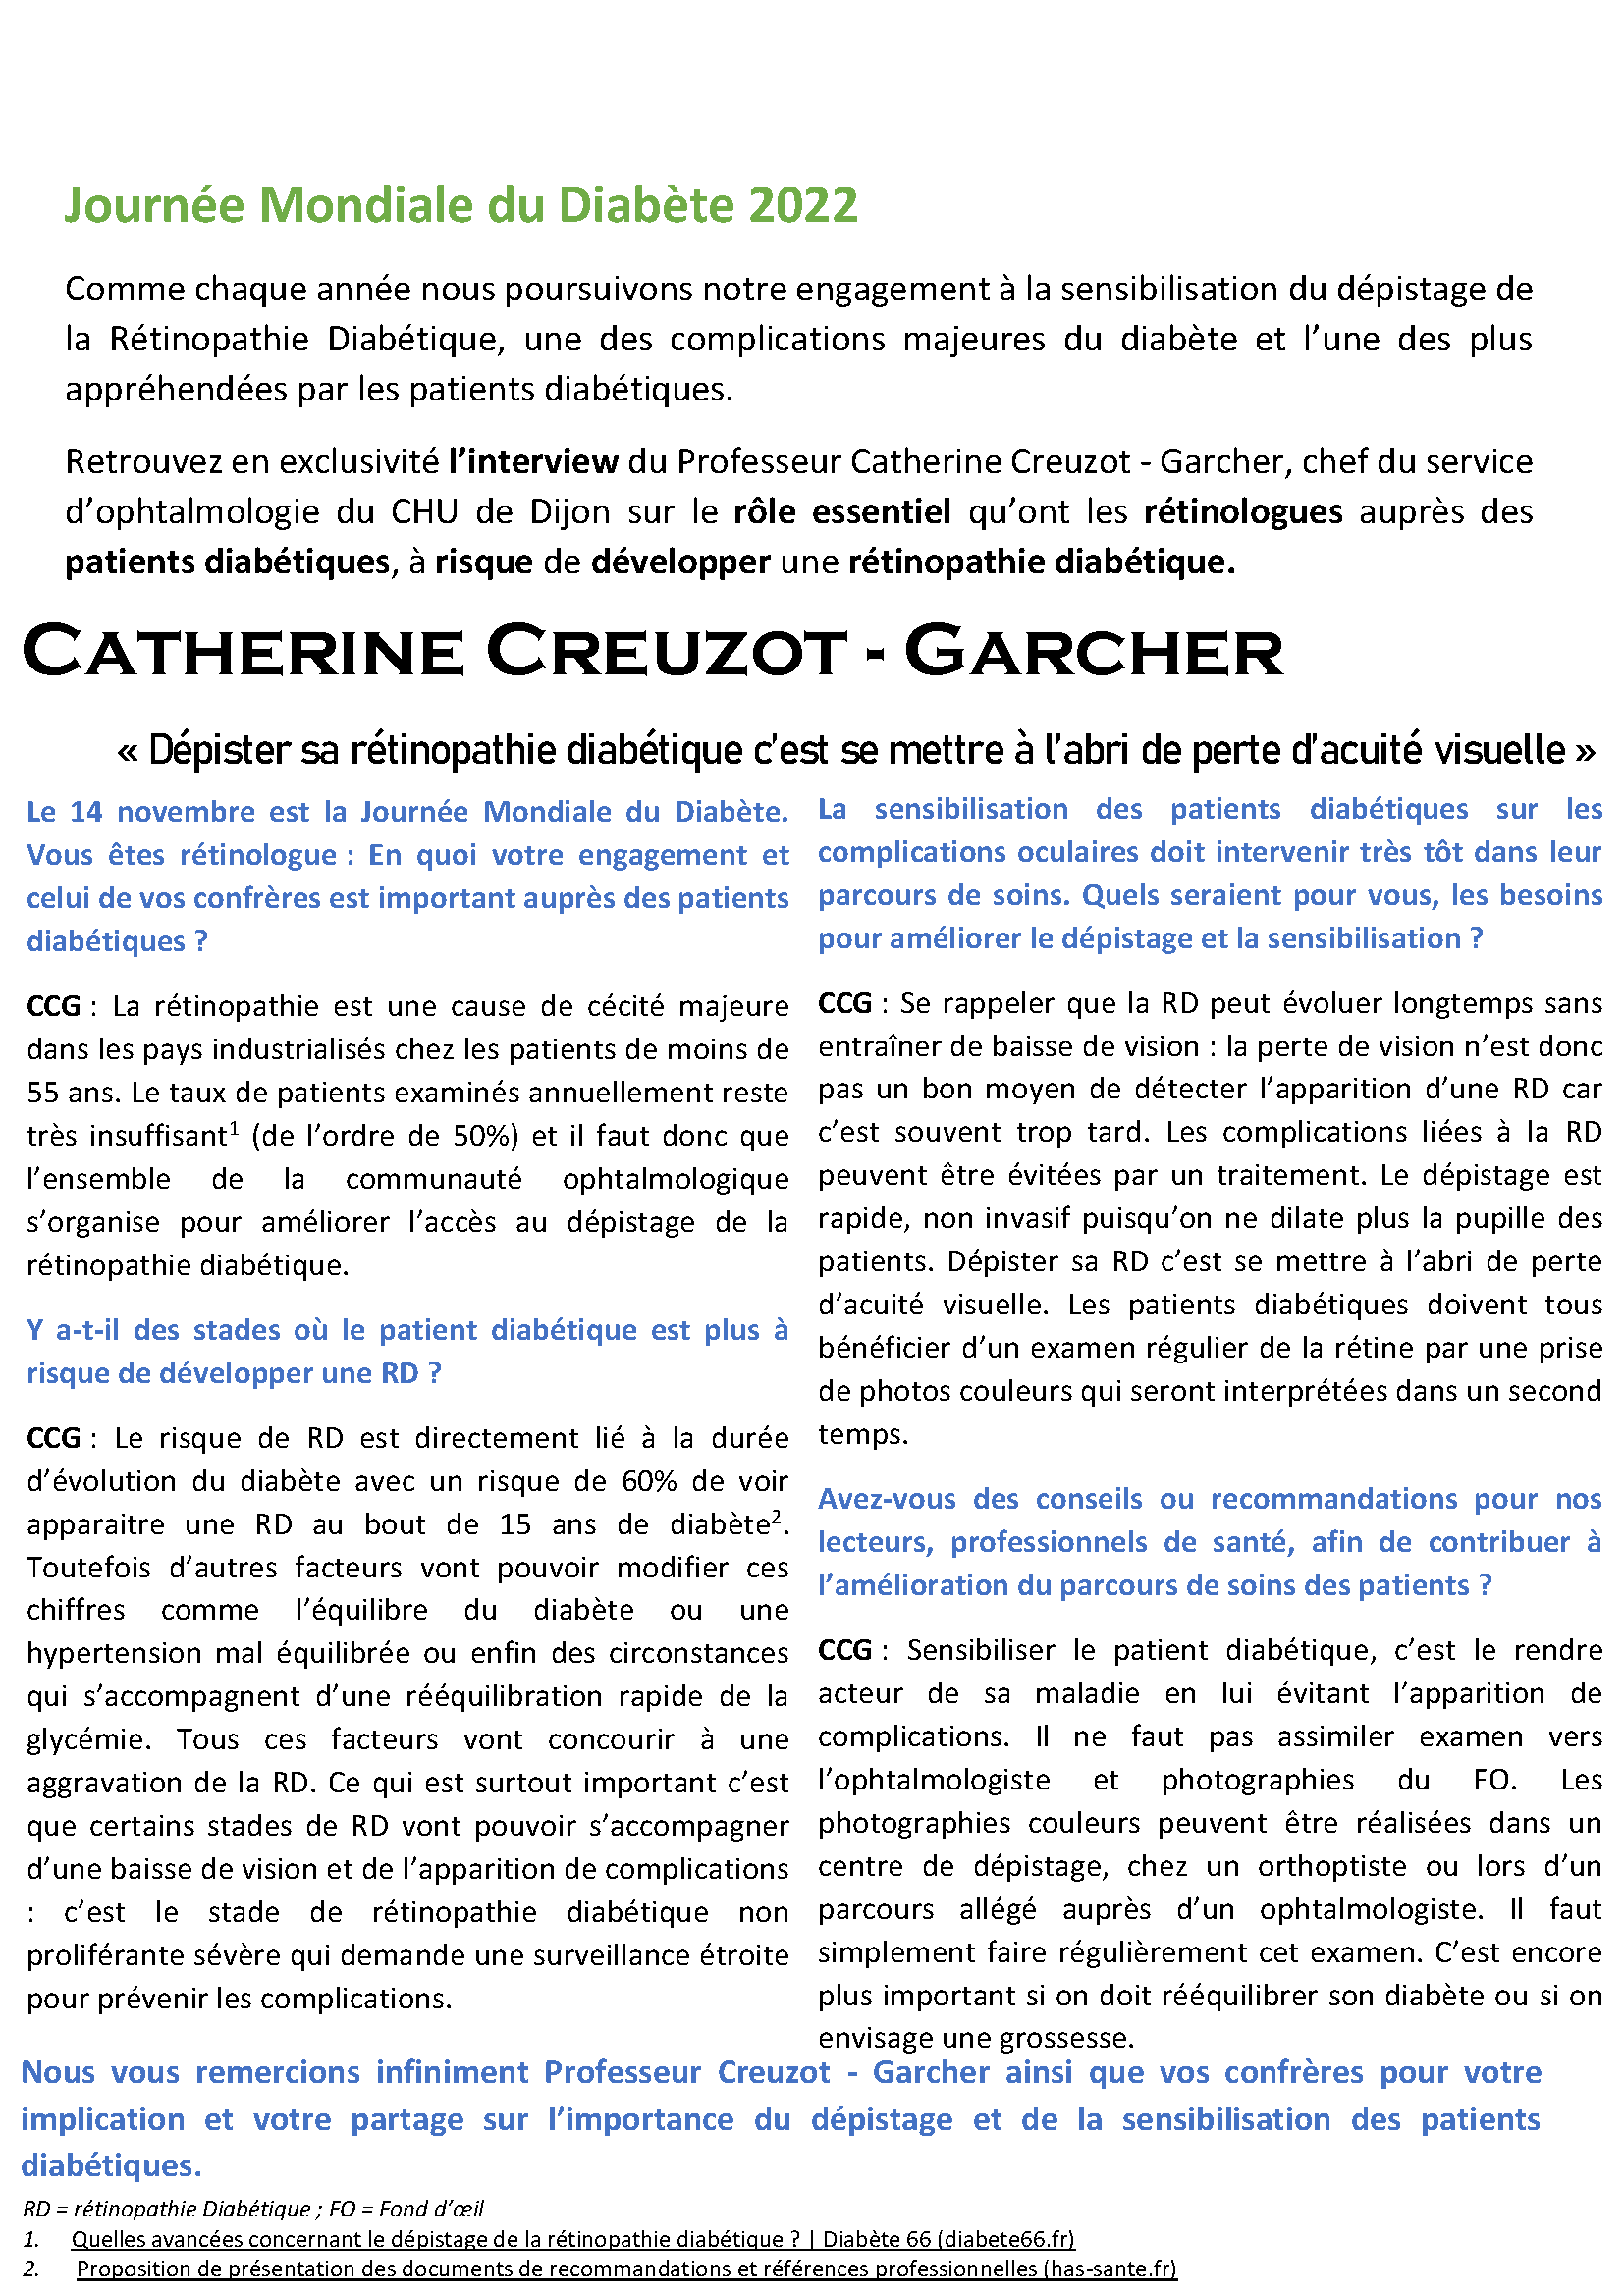 Retrouvez en exclusivité l’interview du Professeur Catherine Creuzot - Garcher !